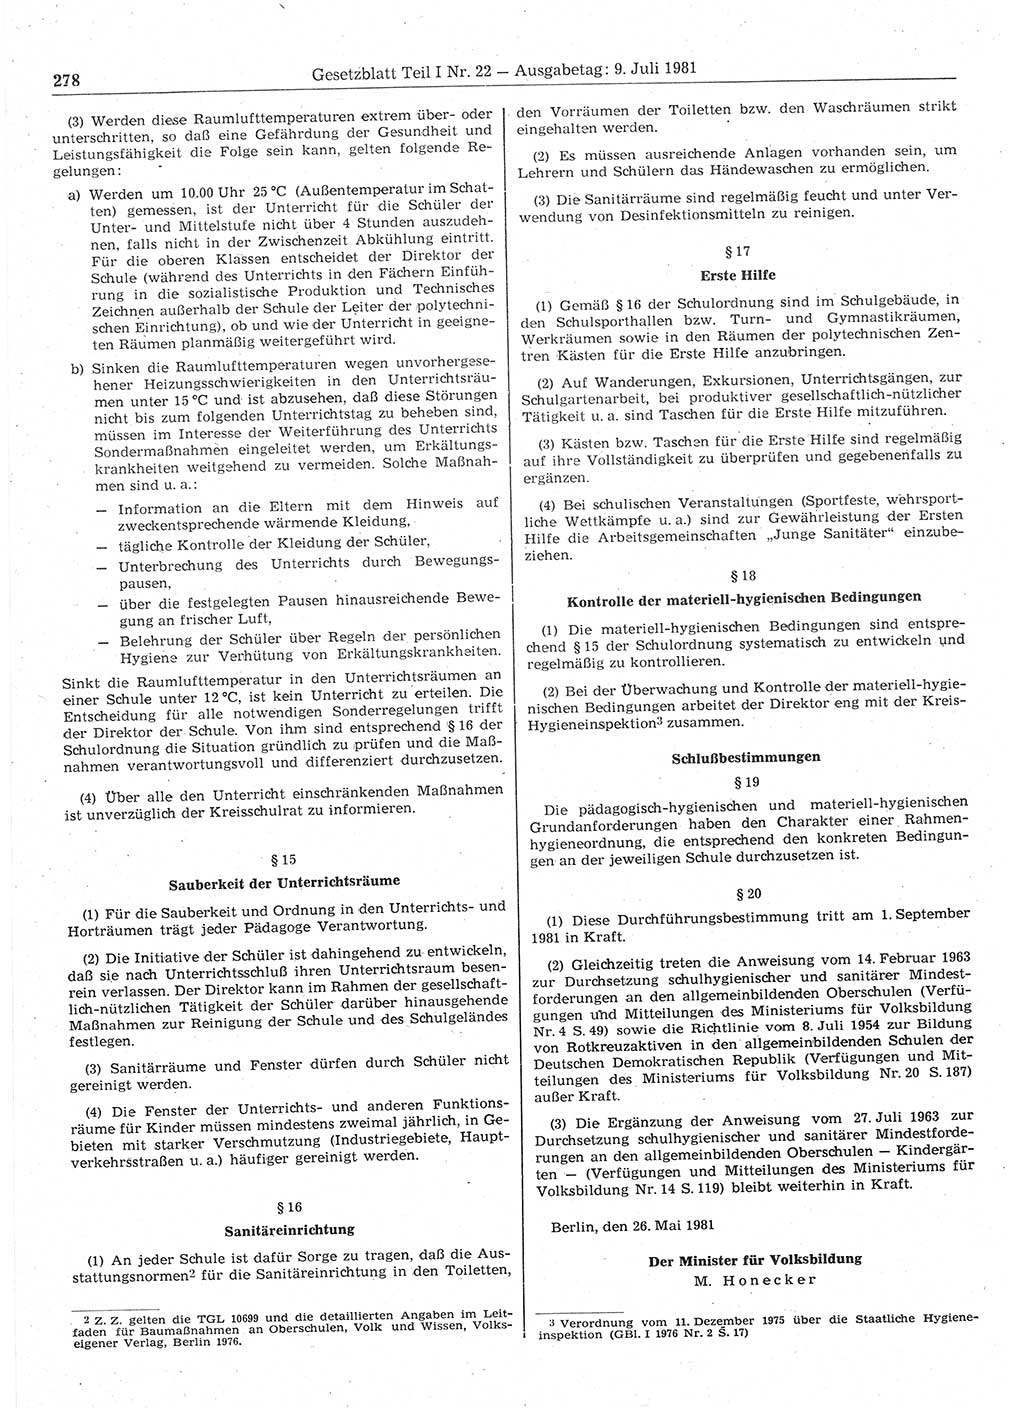 Gesetzblatt (GBl.) der Deutschen Demokratischen Republik (DDR) Teil Ⅰ 1981, Seite 278 (GBl. DDR Ⅰ 1981, S. 278)